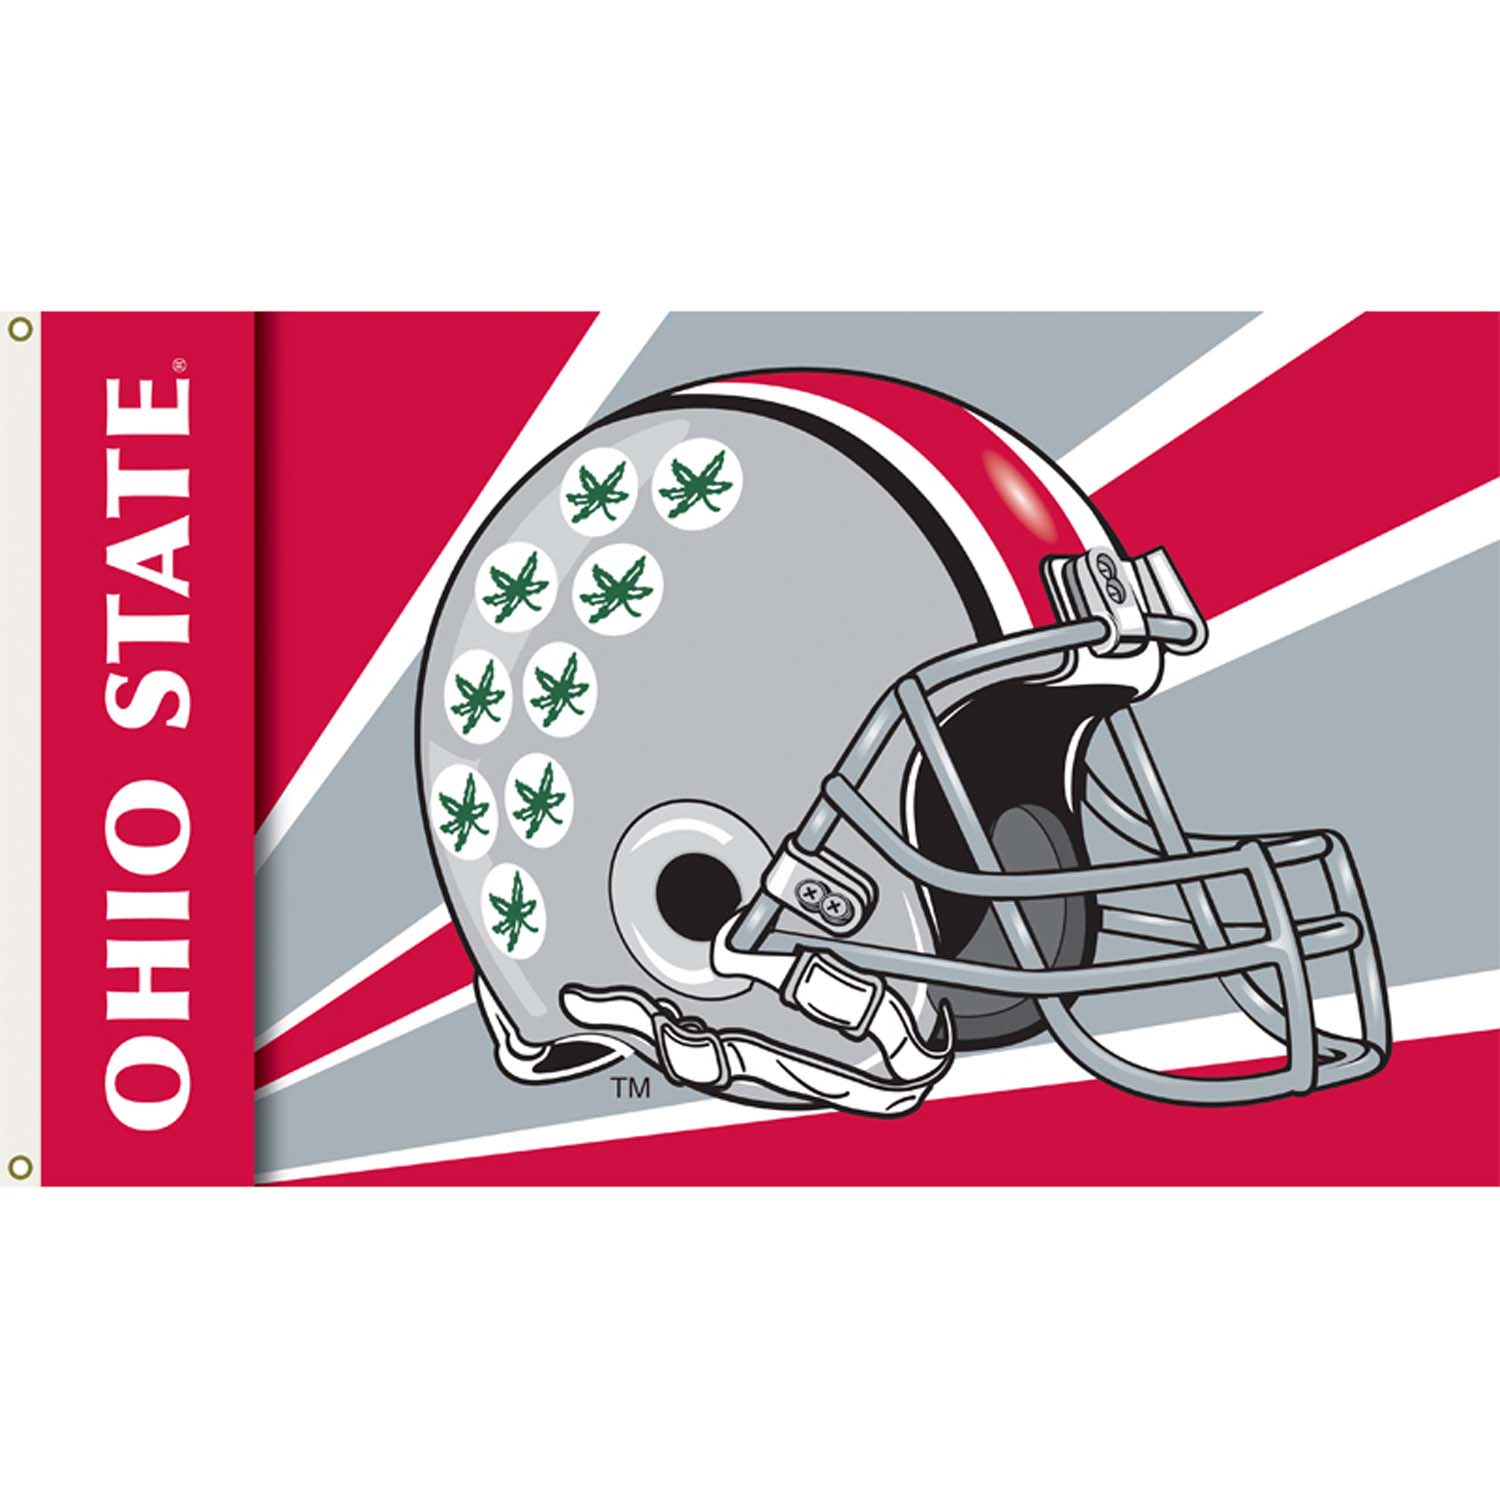 Ohio State Helmet Stripe Wallpaper Border